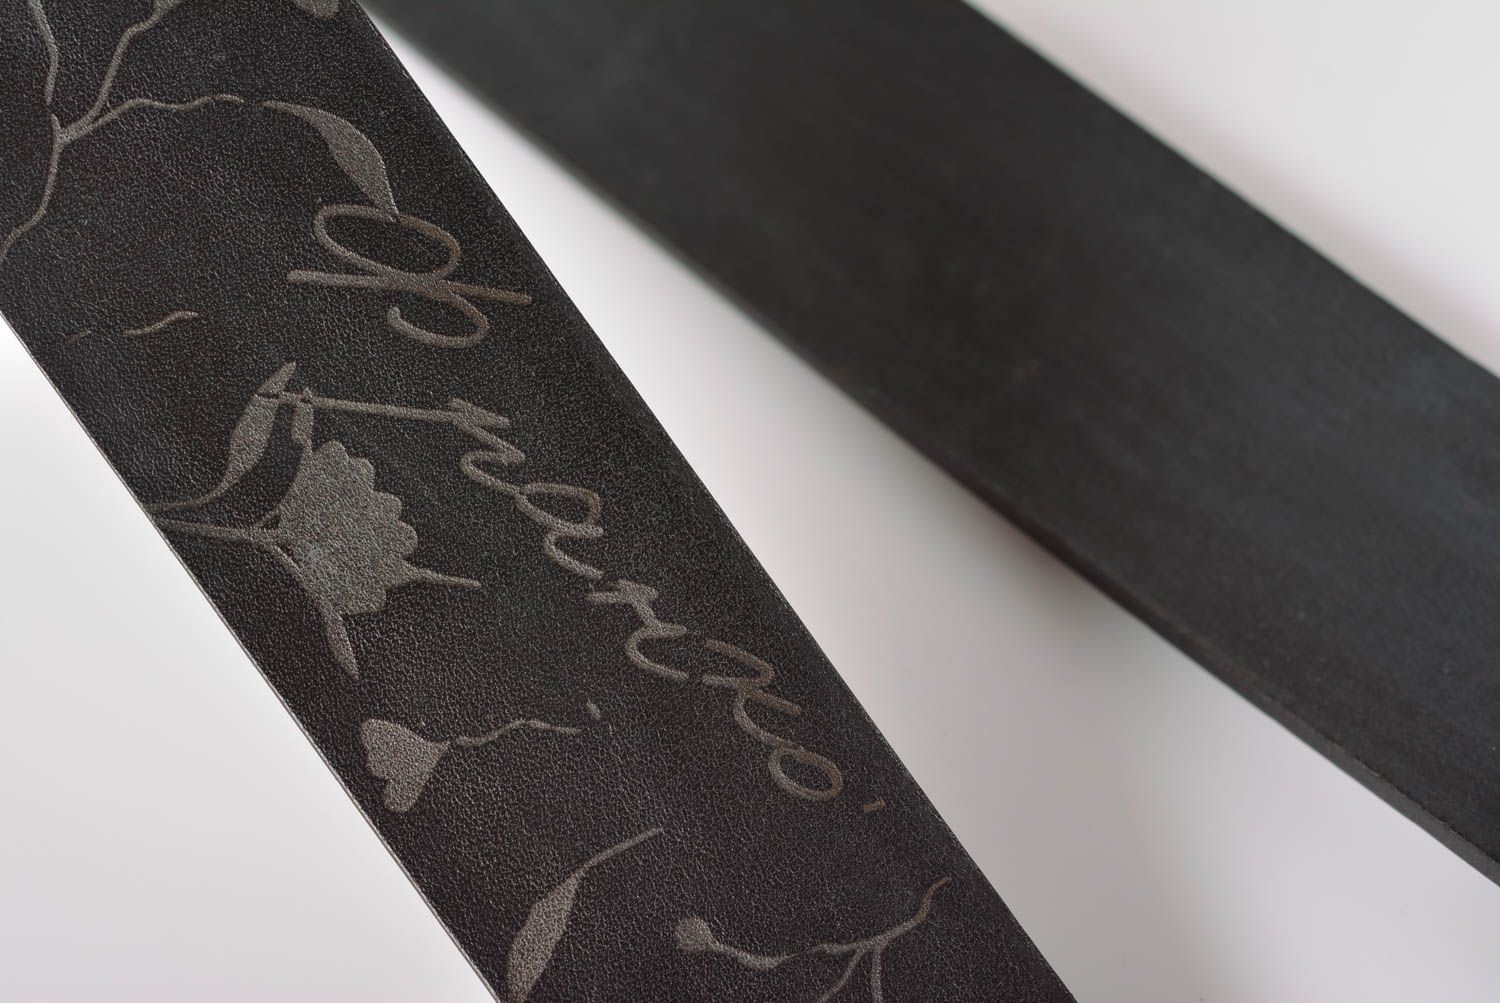 Black leather belt designer belts for men handmade leather goods gifts for him photo 5